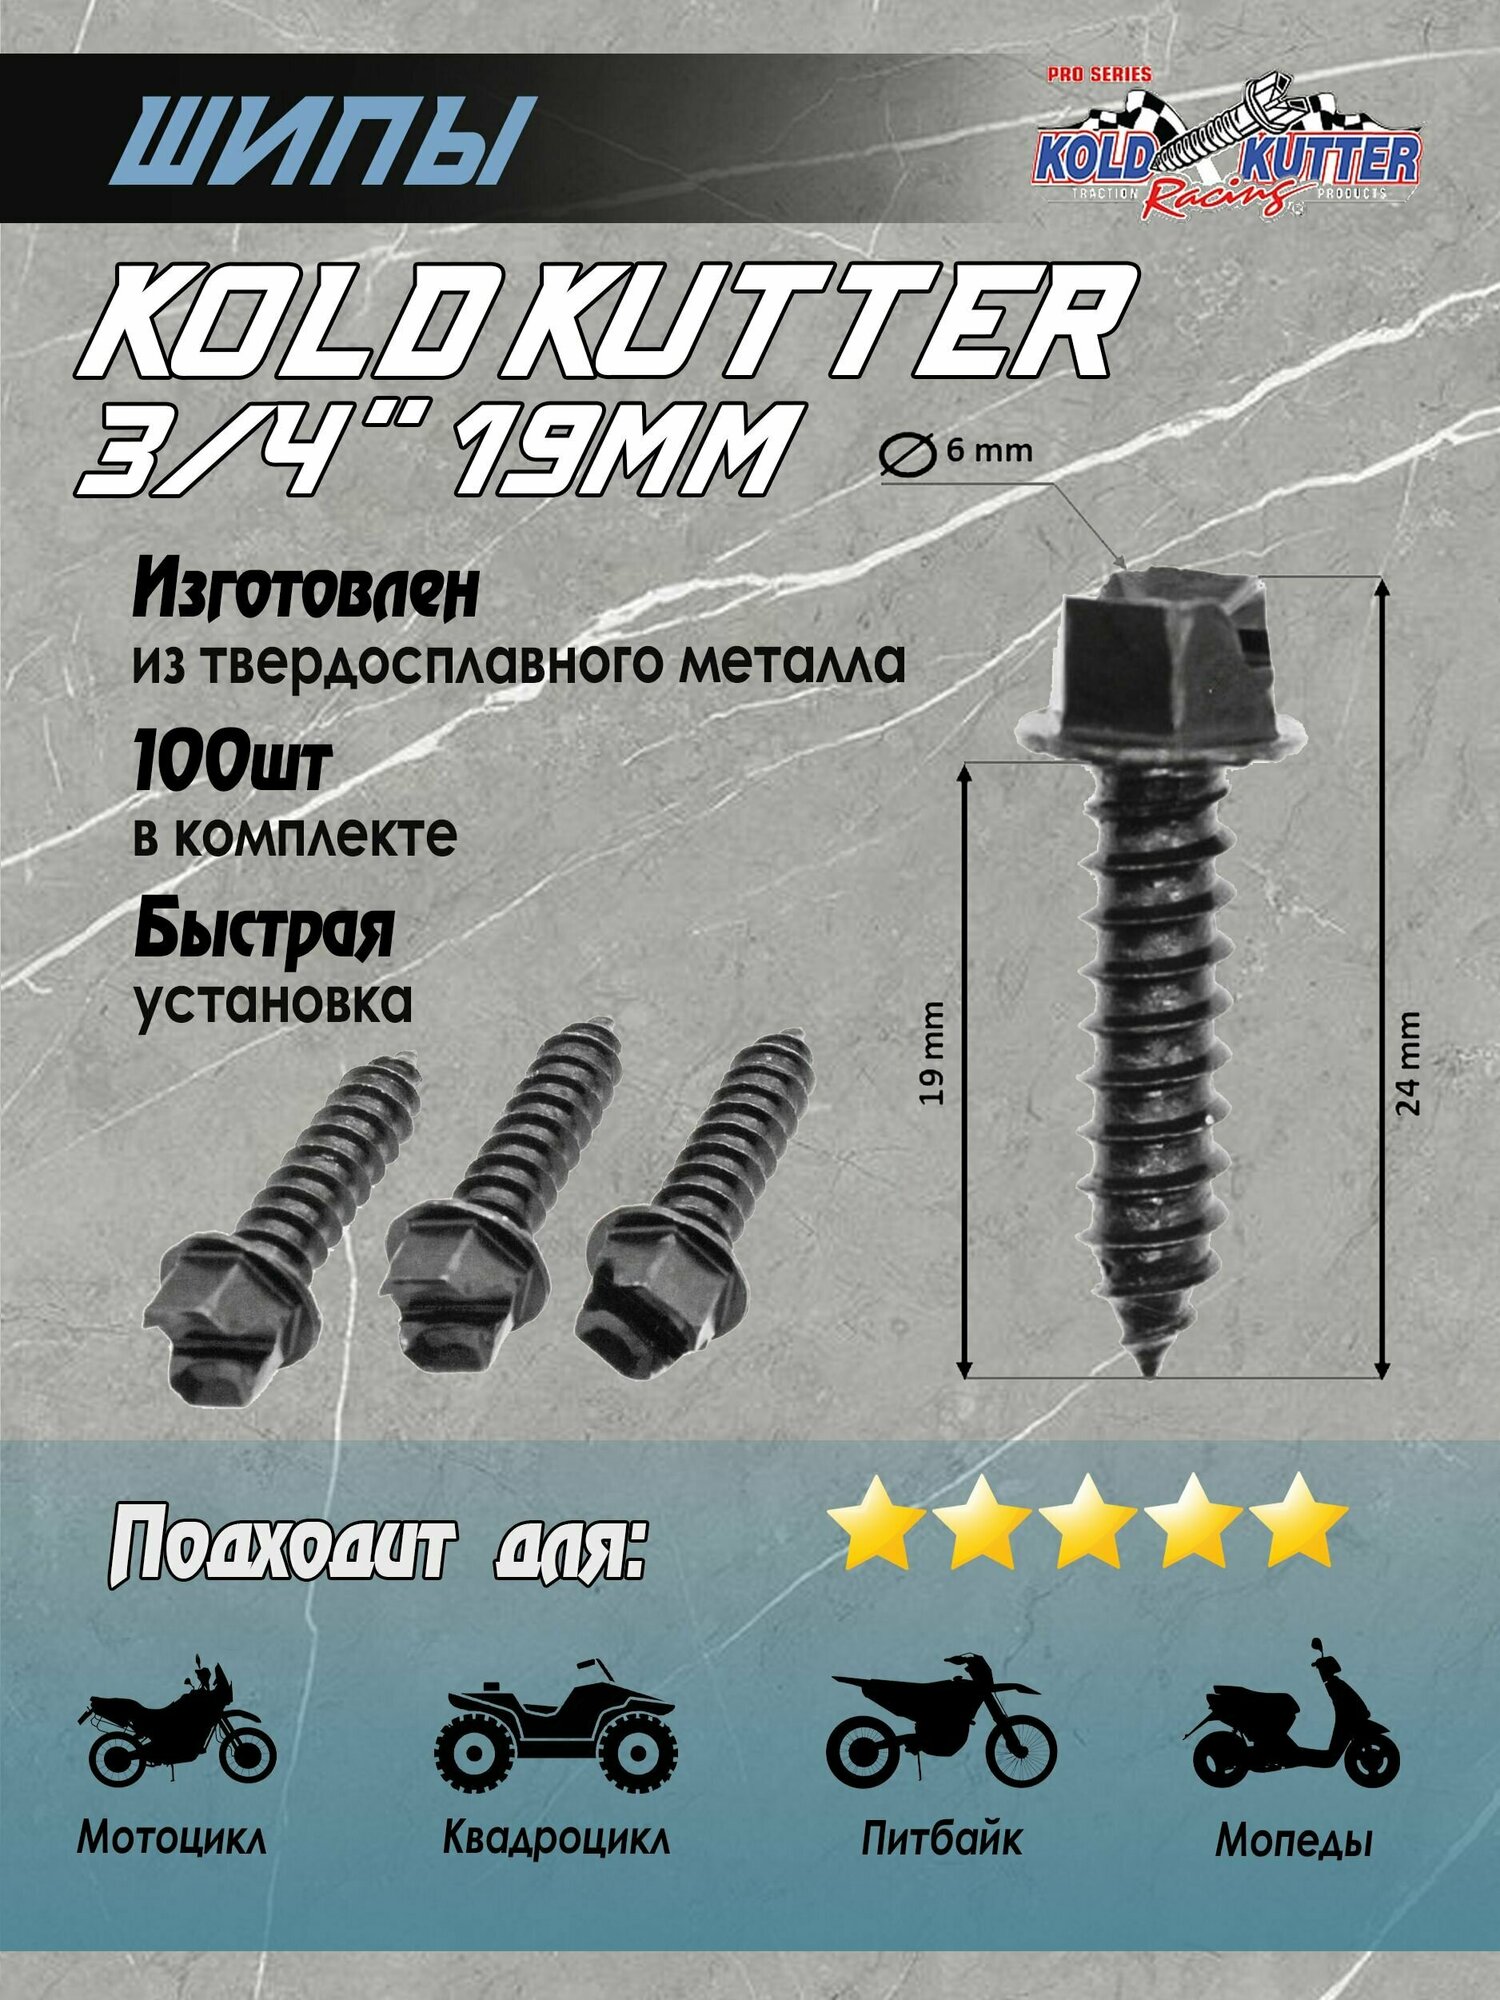 Шипы Kold Kutter 3/4" (19 мм) для самостоятельной ошиповки шин 100 шт для питбайка мотоцикла квадроцикла